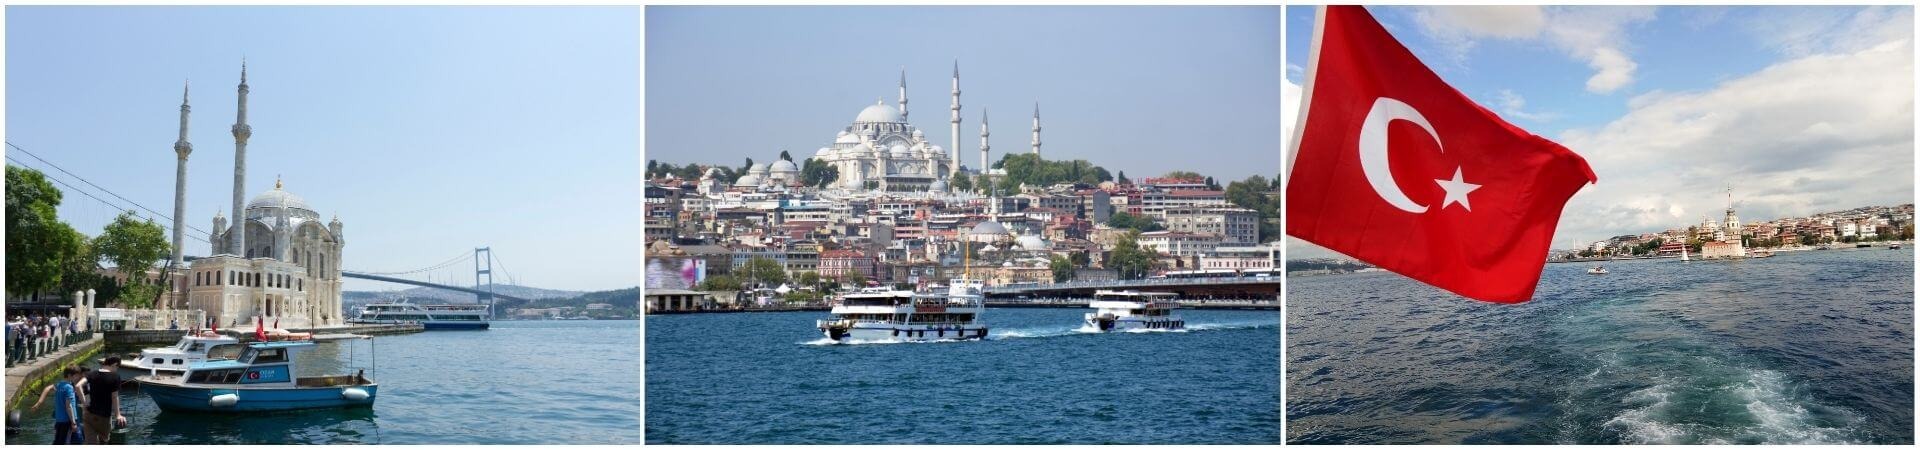 Hop-on-Hop-off-Bootsfahrt auf dem Bosporus